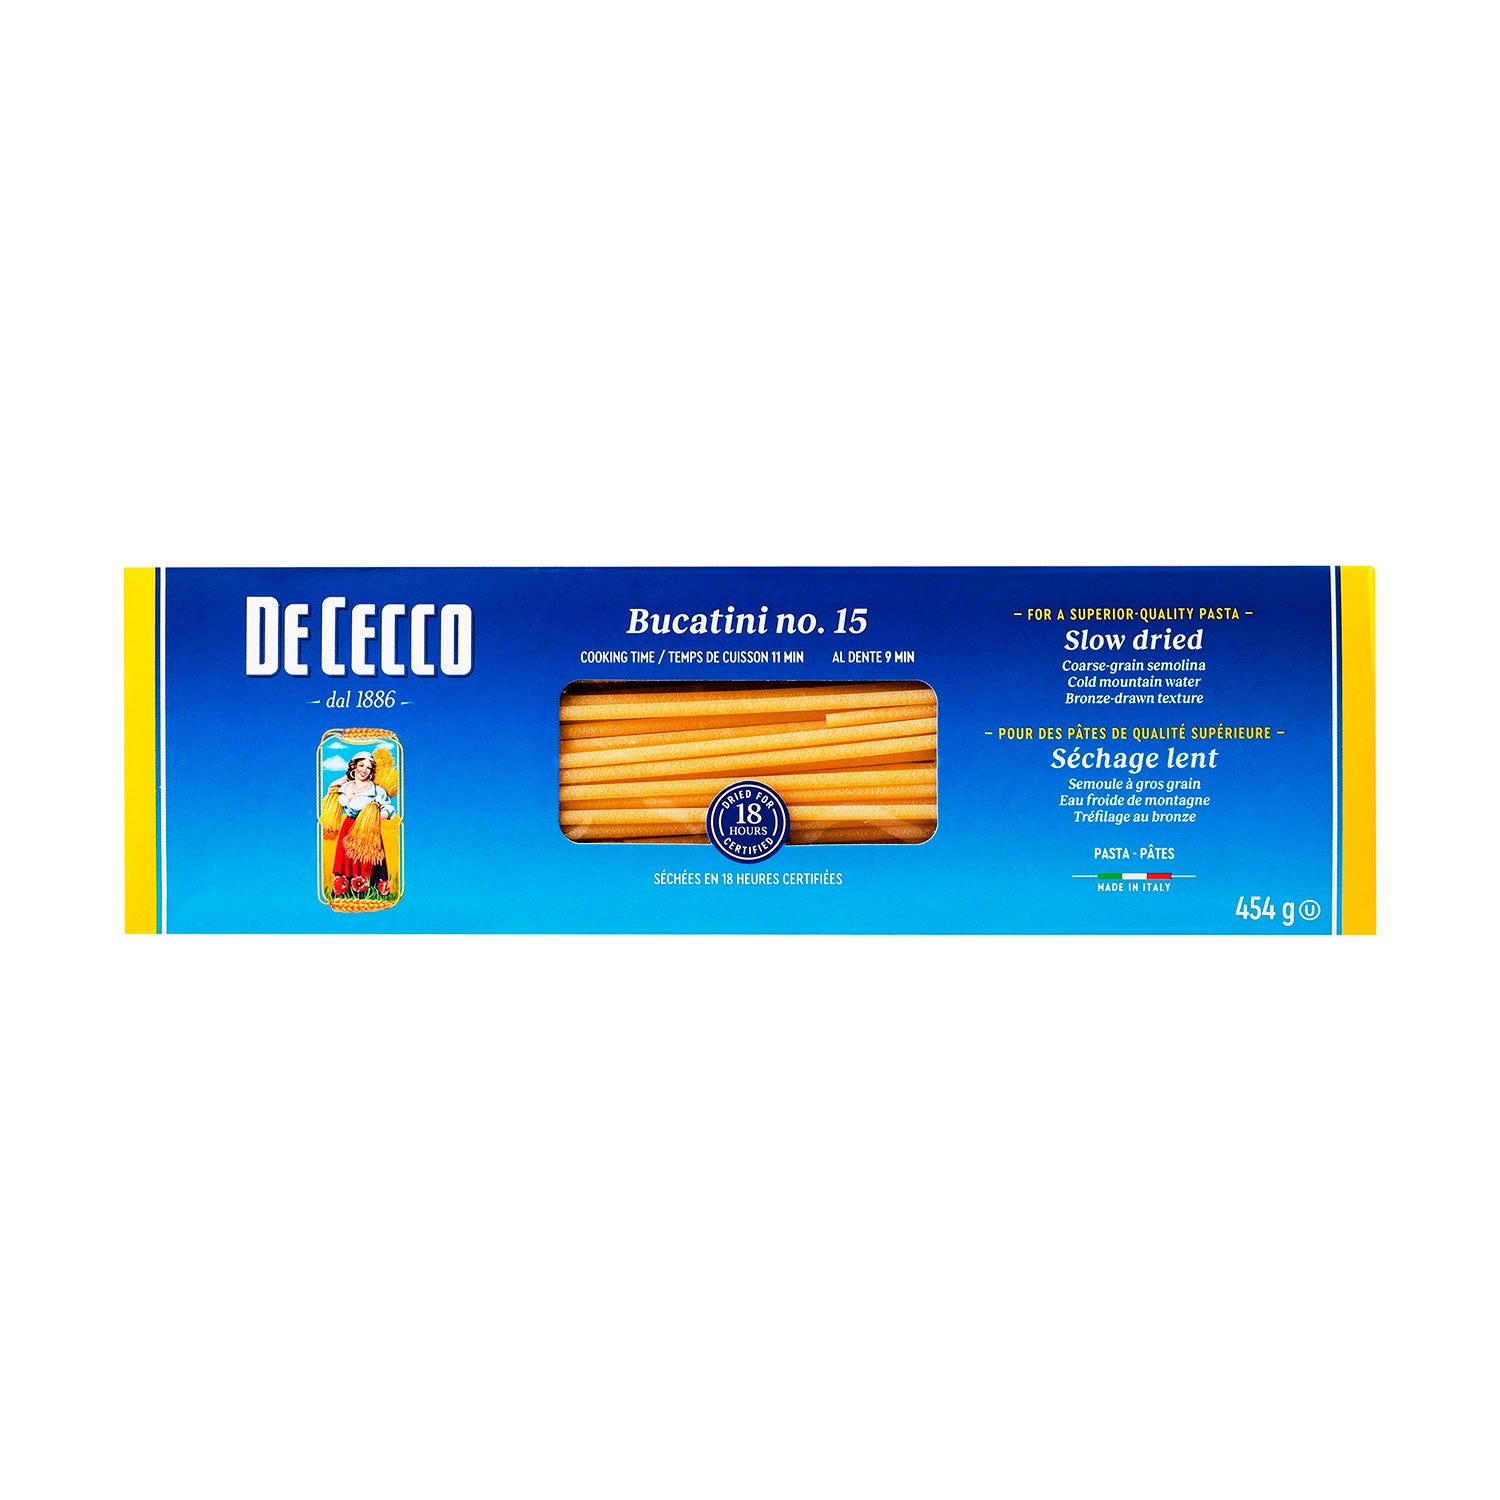 De Cecco - Pasta Bucatini de Sémola - 454 g